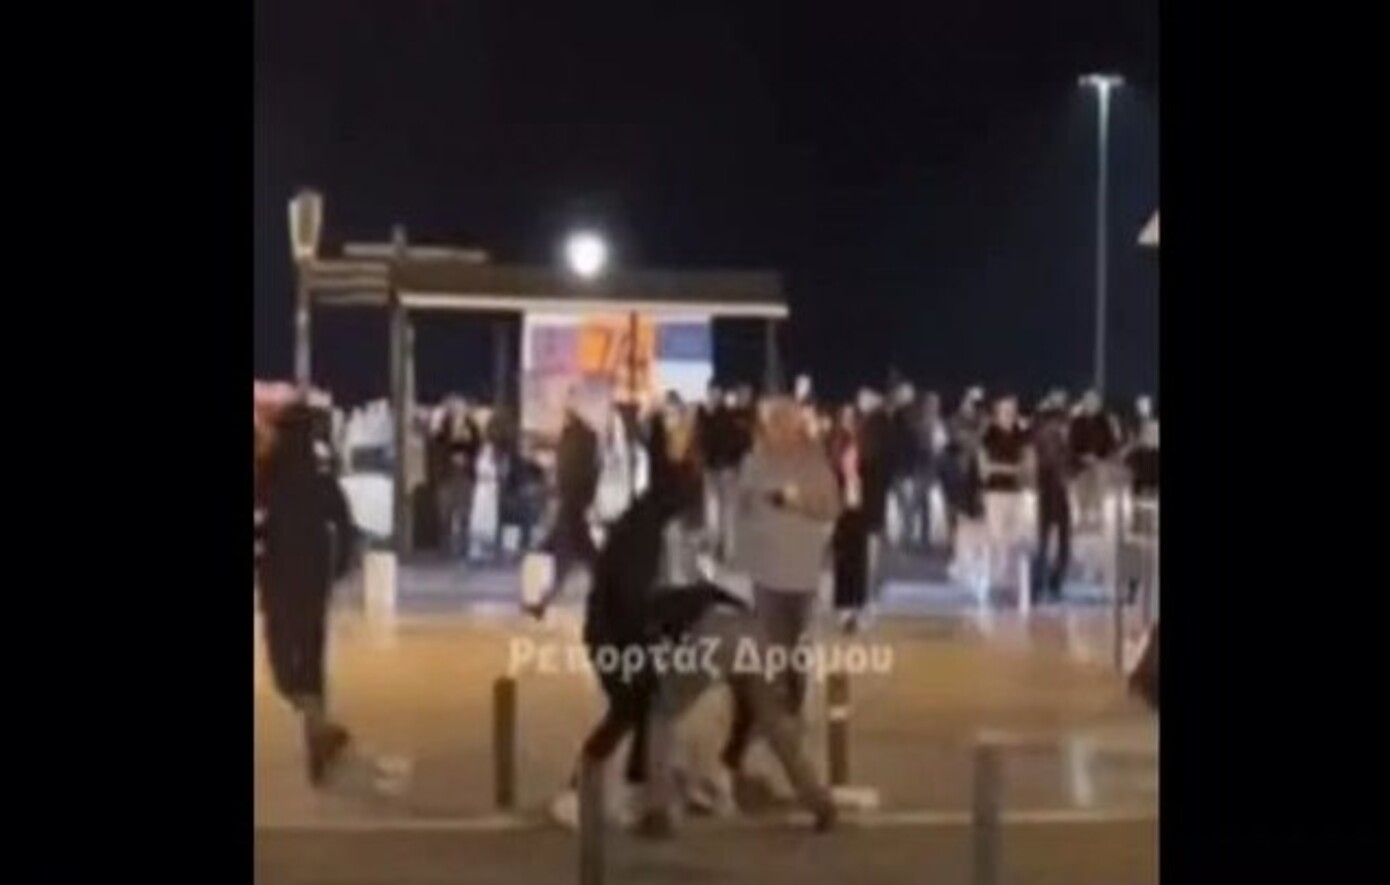 Βίντεο &#8211; ντοκουμέντο από την άγρια επίθεση σε νεαρό στην πλατεία Αριστοτέλους